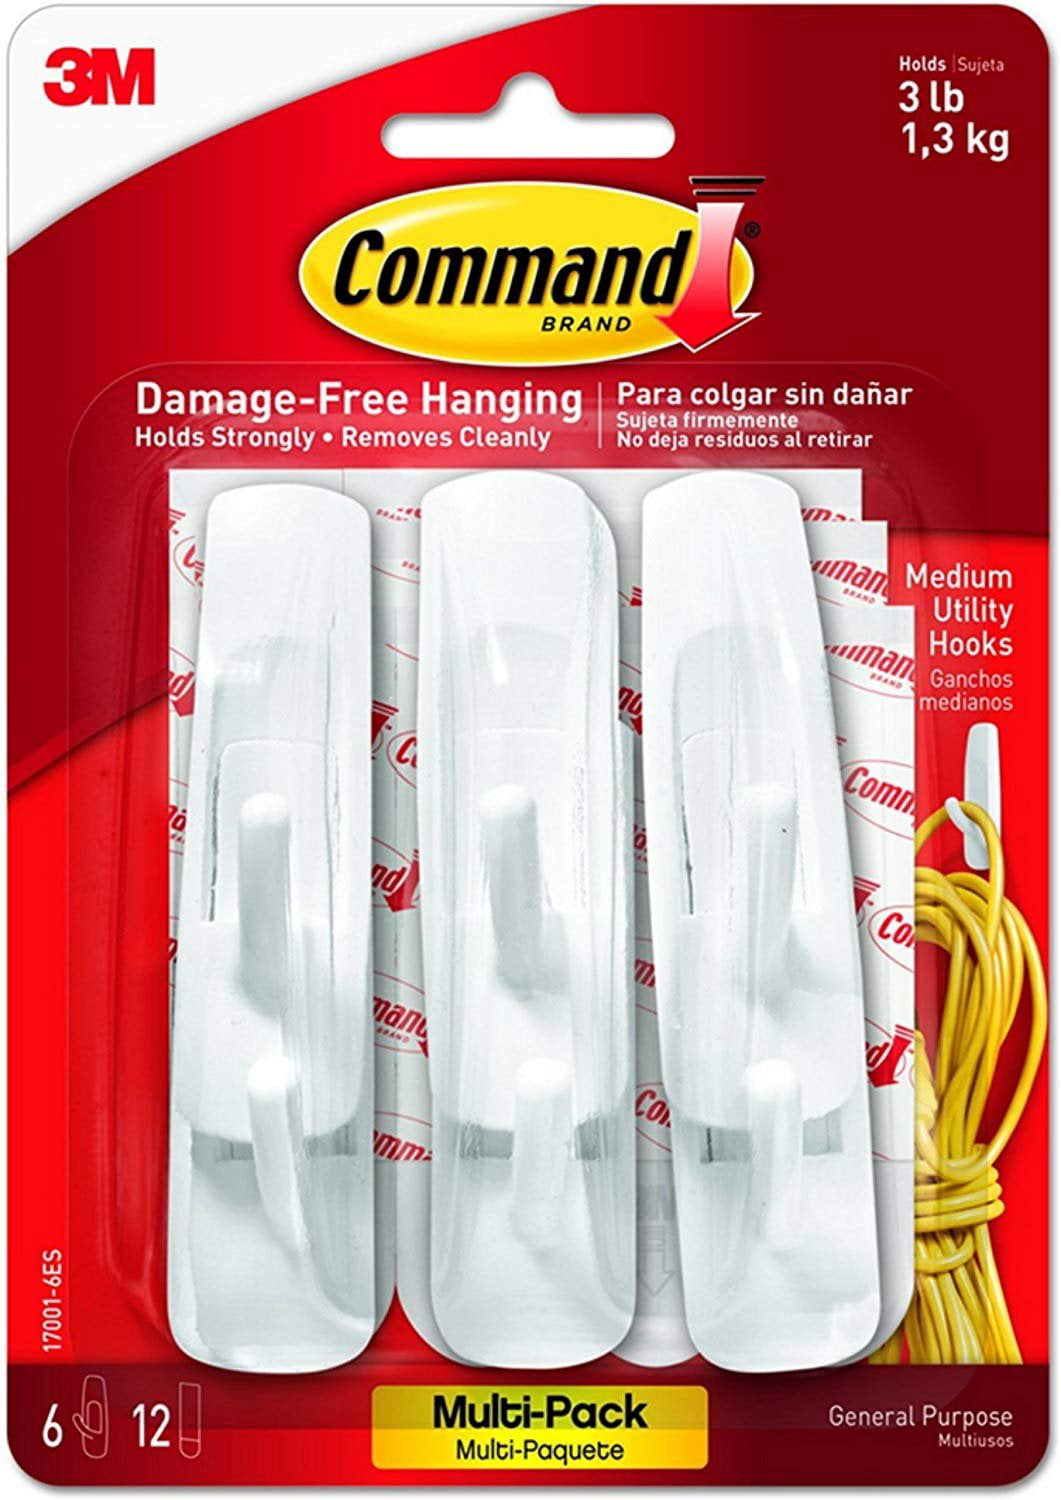 Command Strips 17001-VP-6PK Medium Command Hooks Value Pack 6 Count 